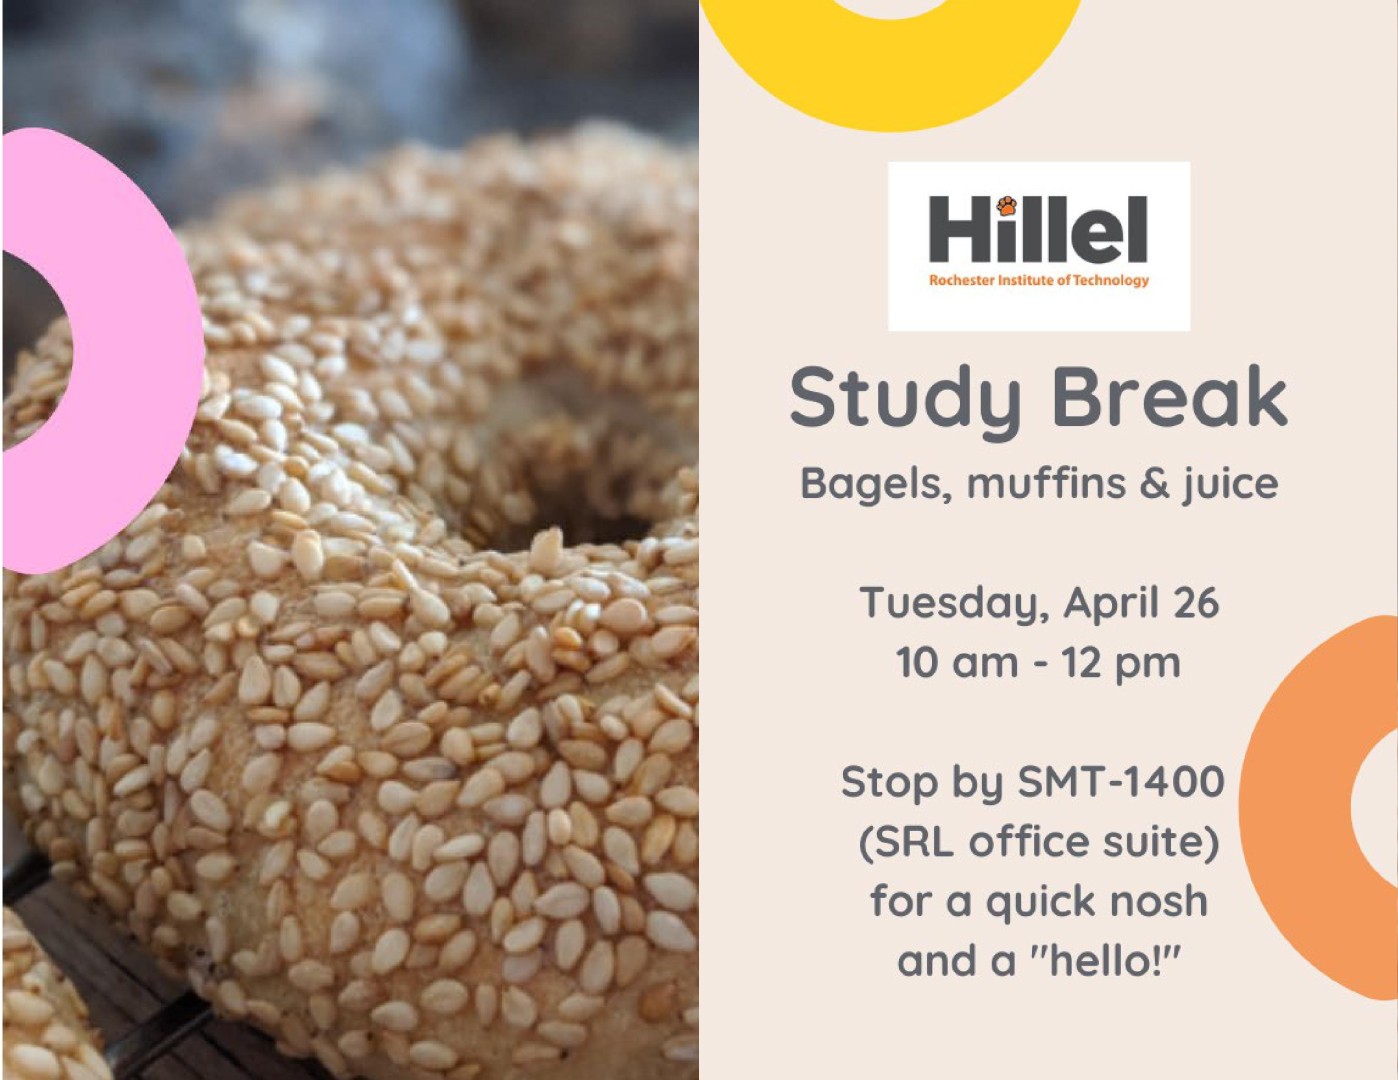 Flyer advertising RIT Hillel bagel break